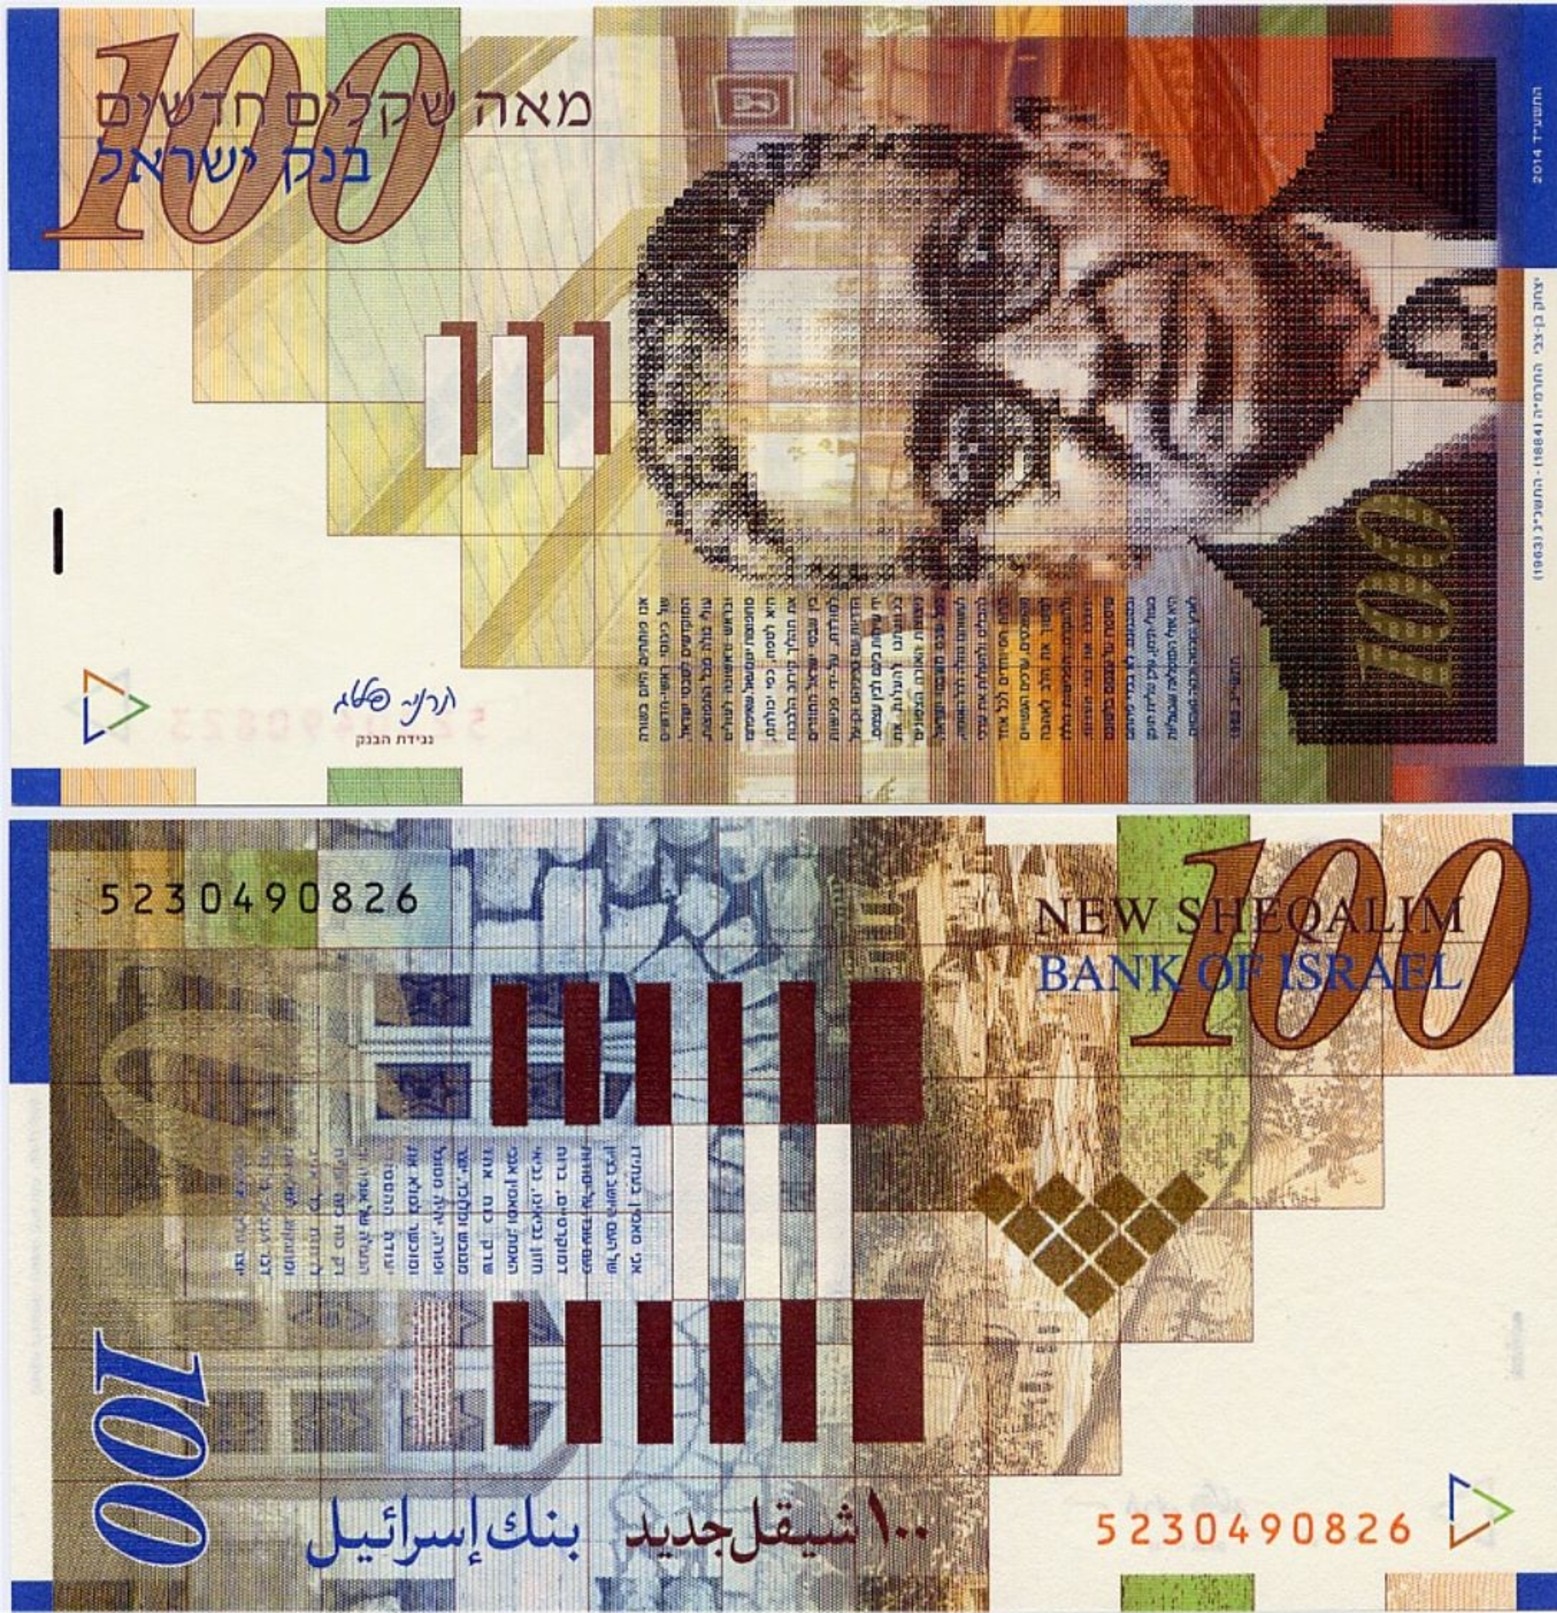 22 миллиона шекелей в рублях. 100 Шекелей банкнота. Банкнота 100 шекелей 2007. Новый израильский шекель банкноты.